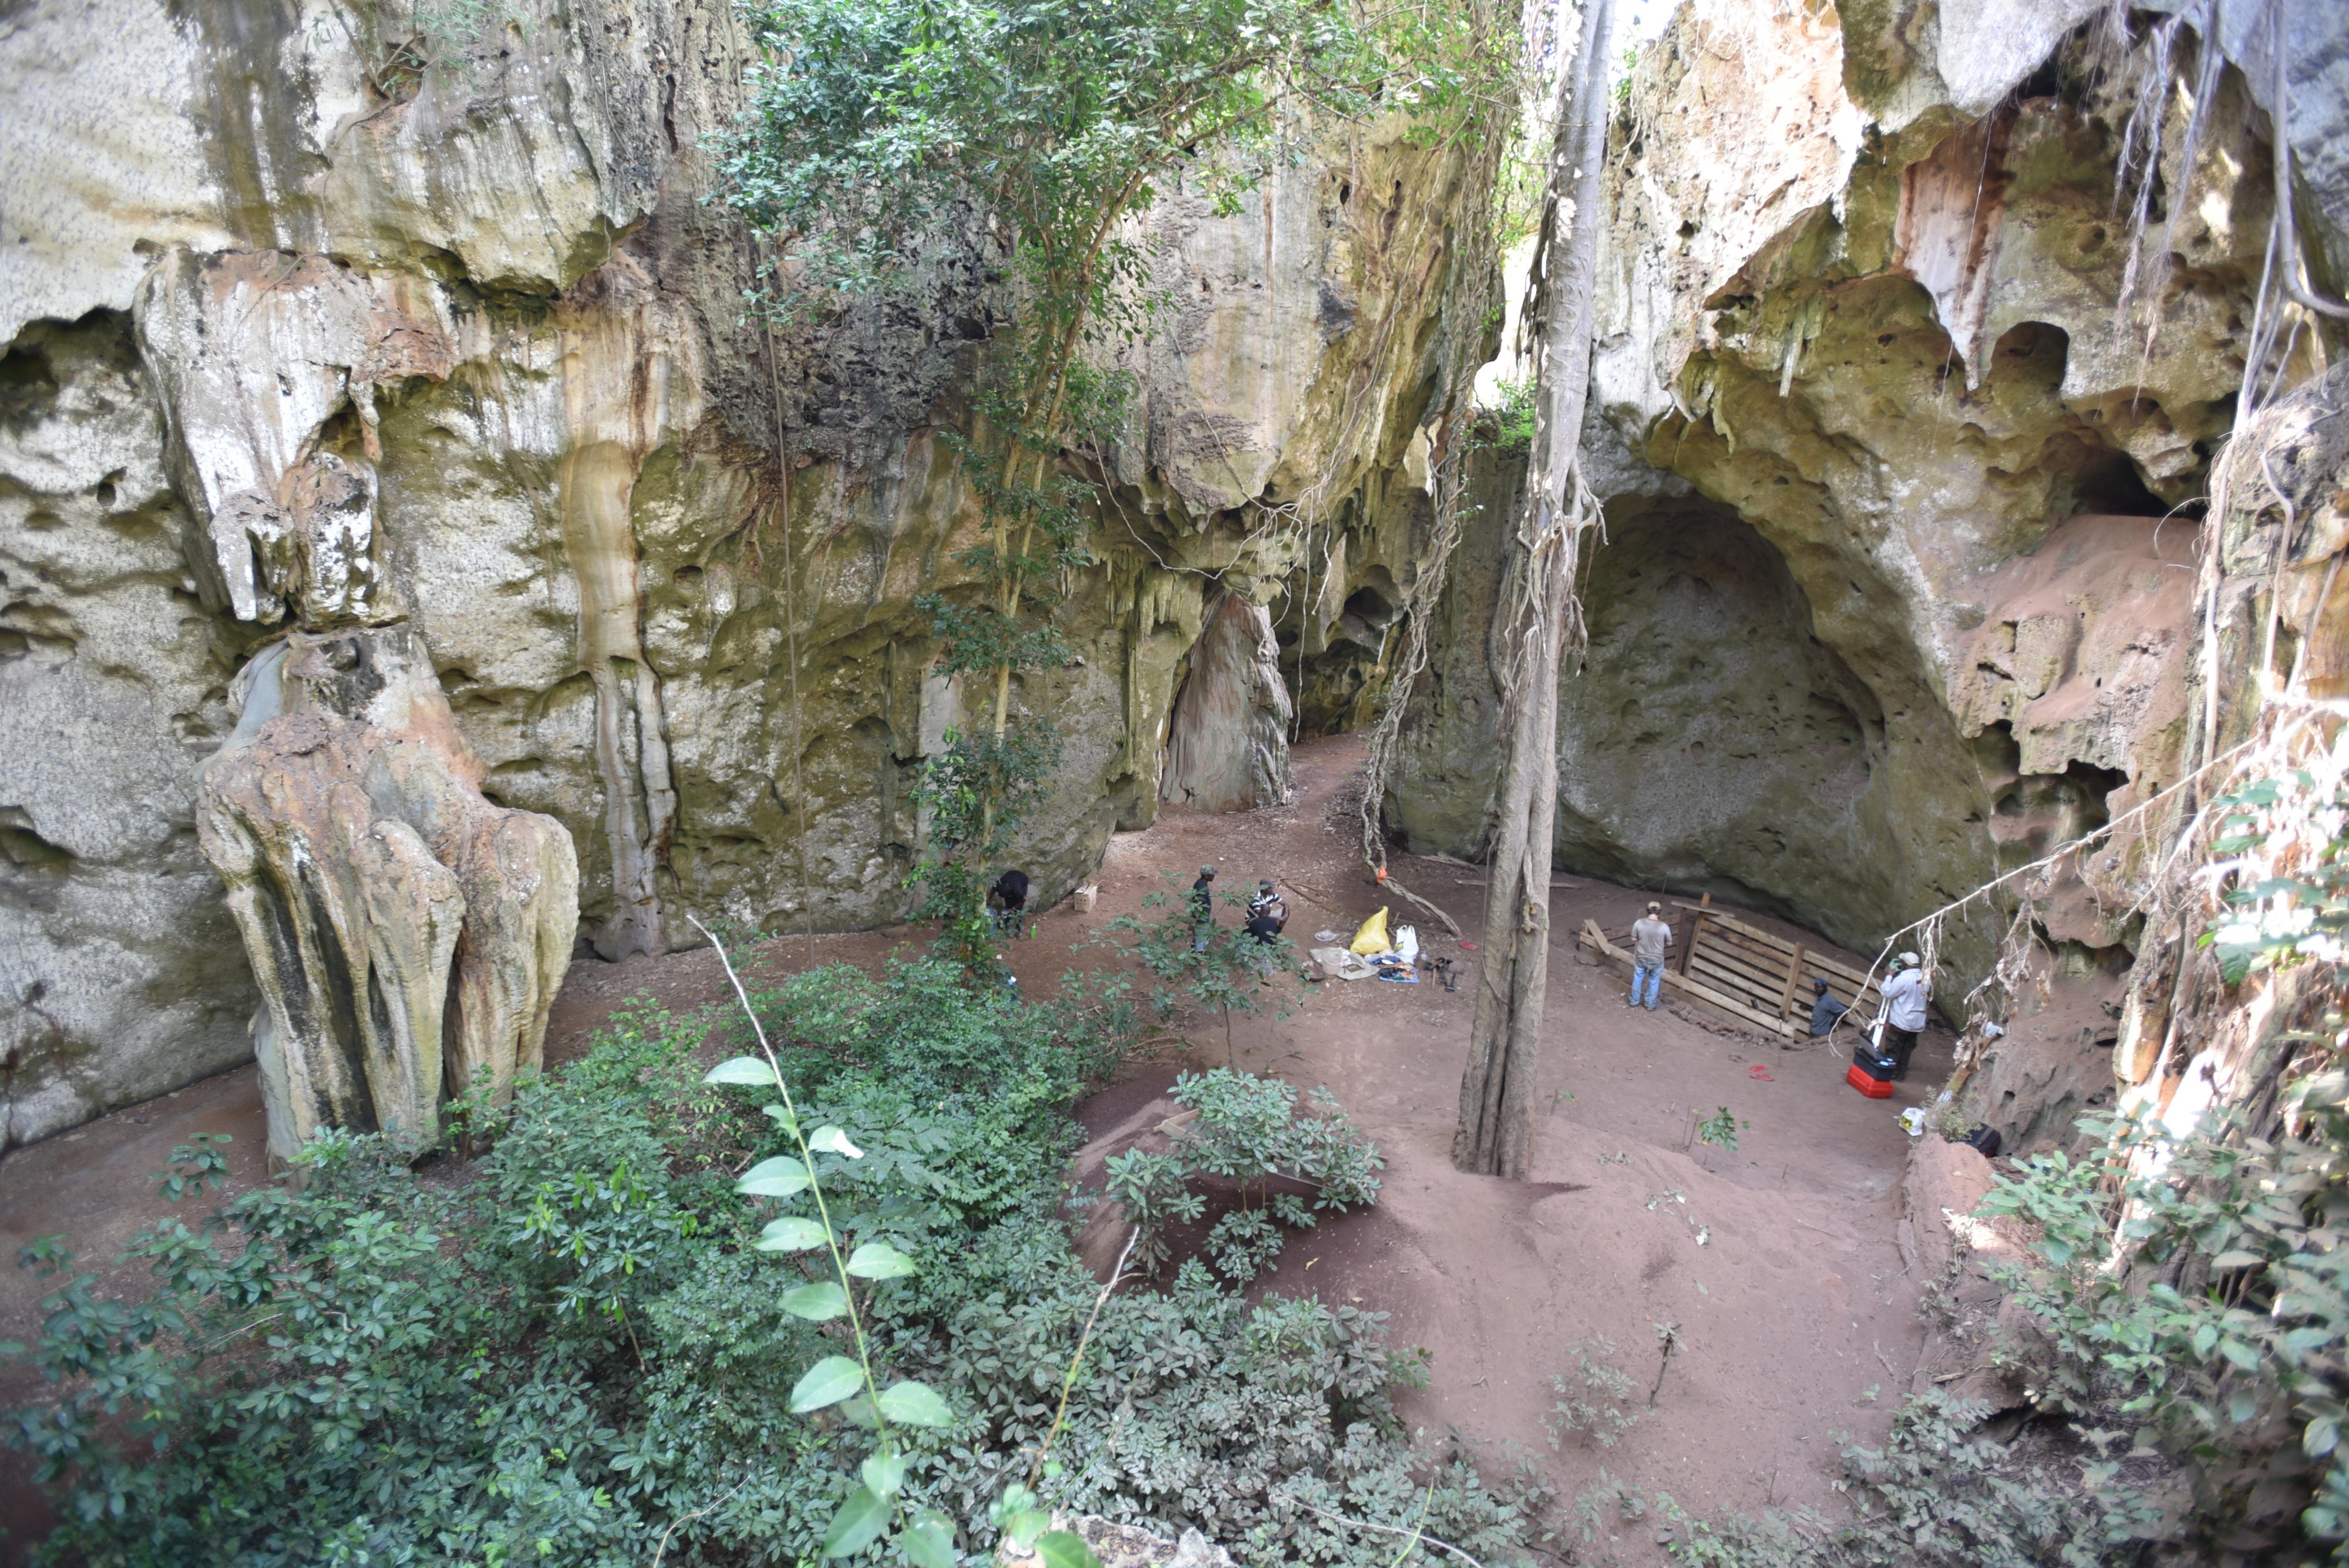 The cave site of Panga ya Saidi